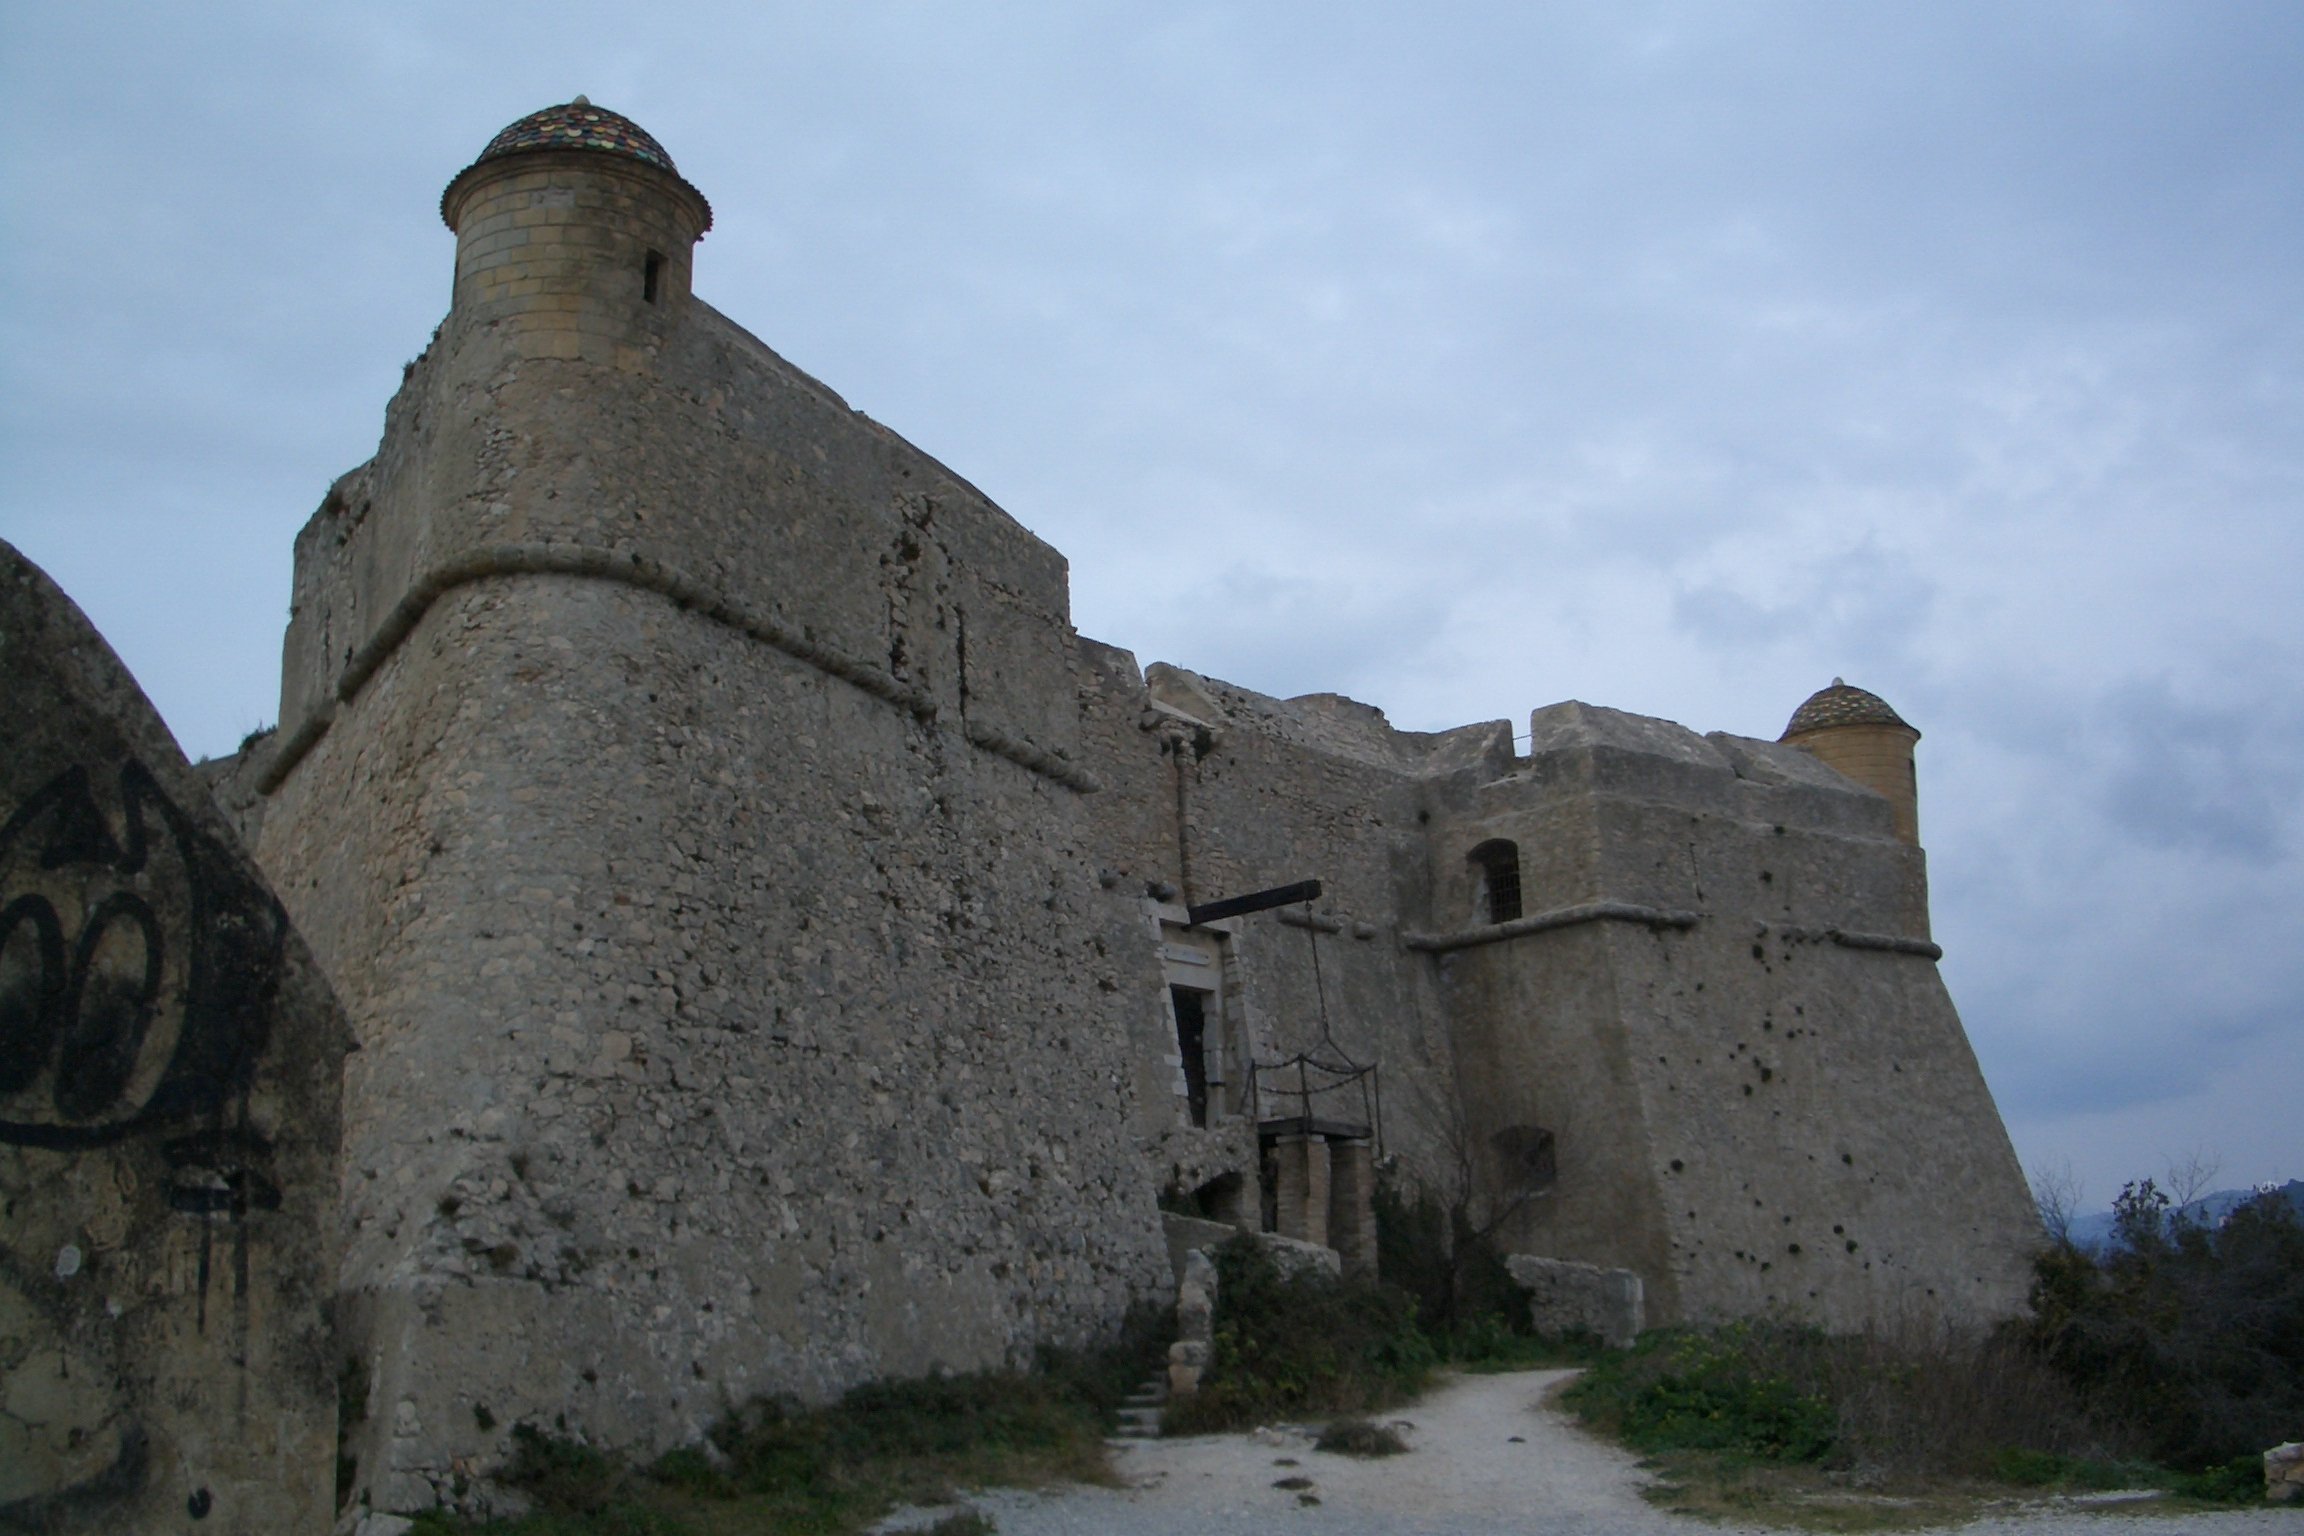 Chateau Vauban